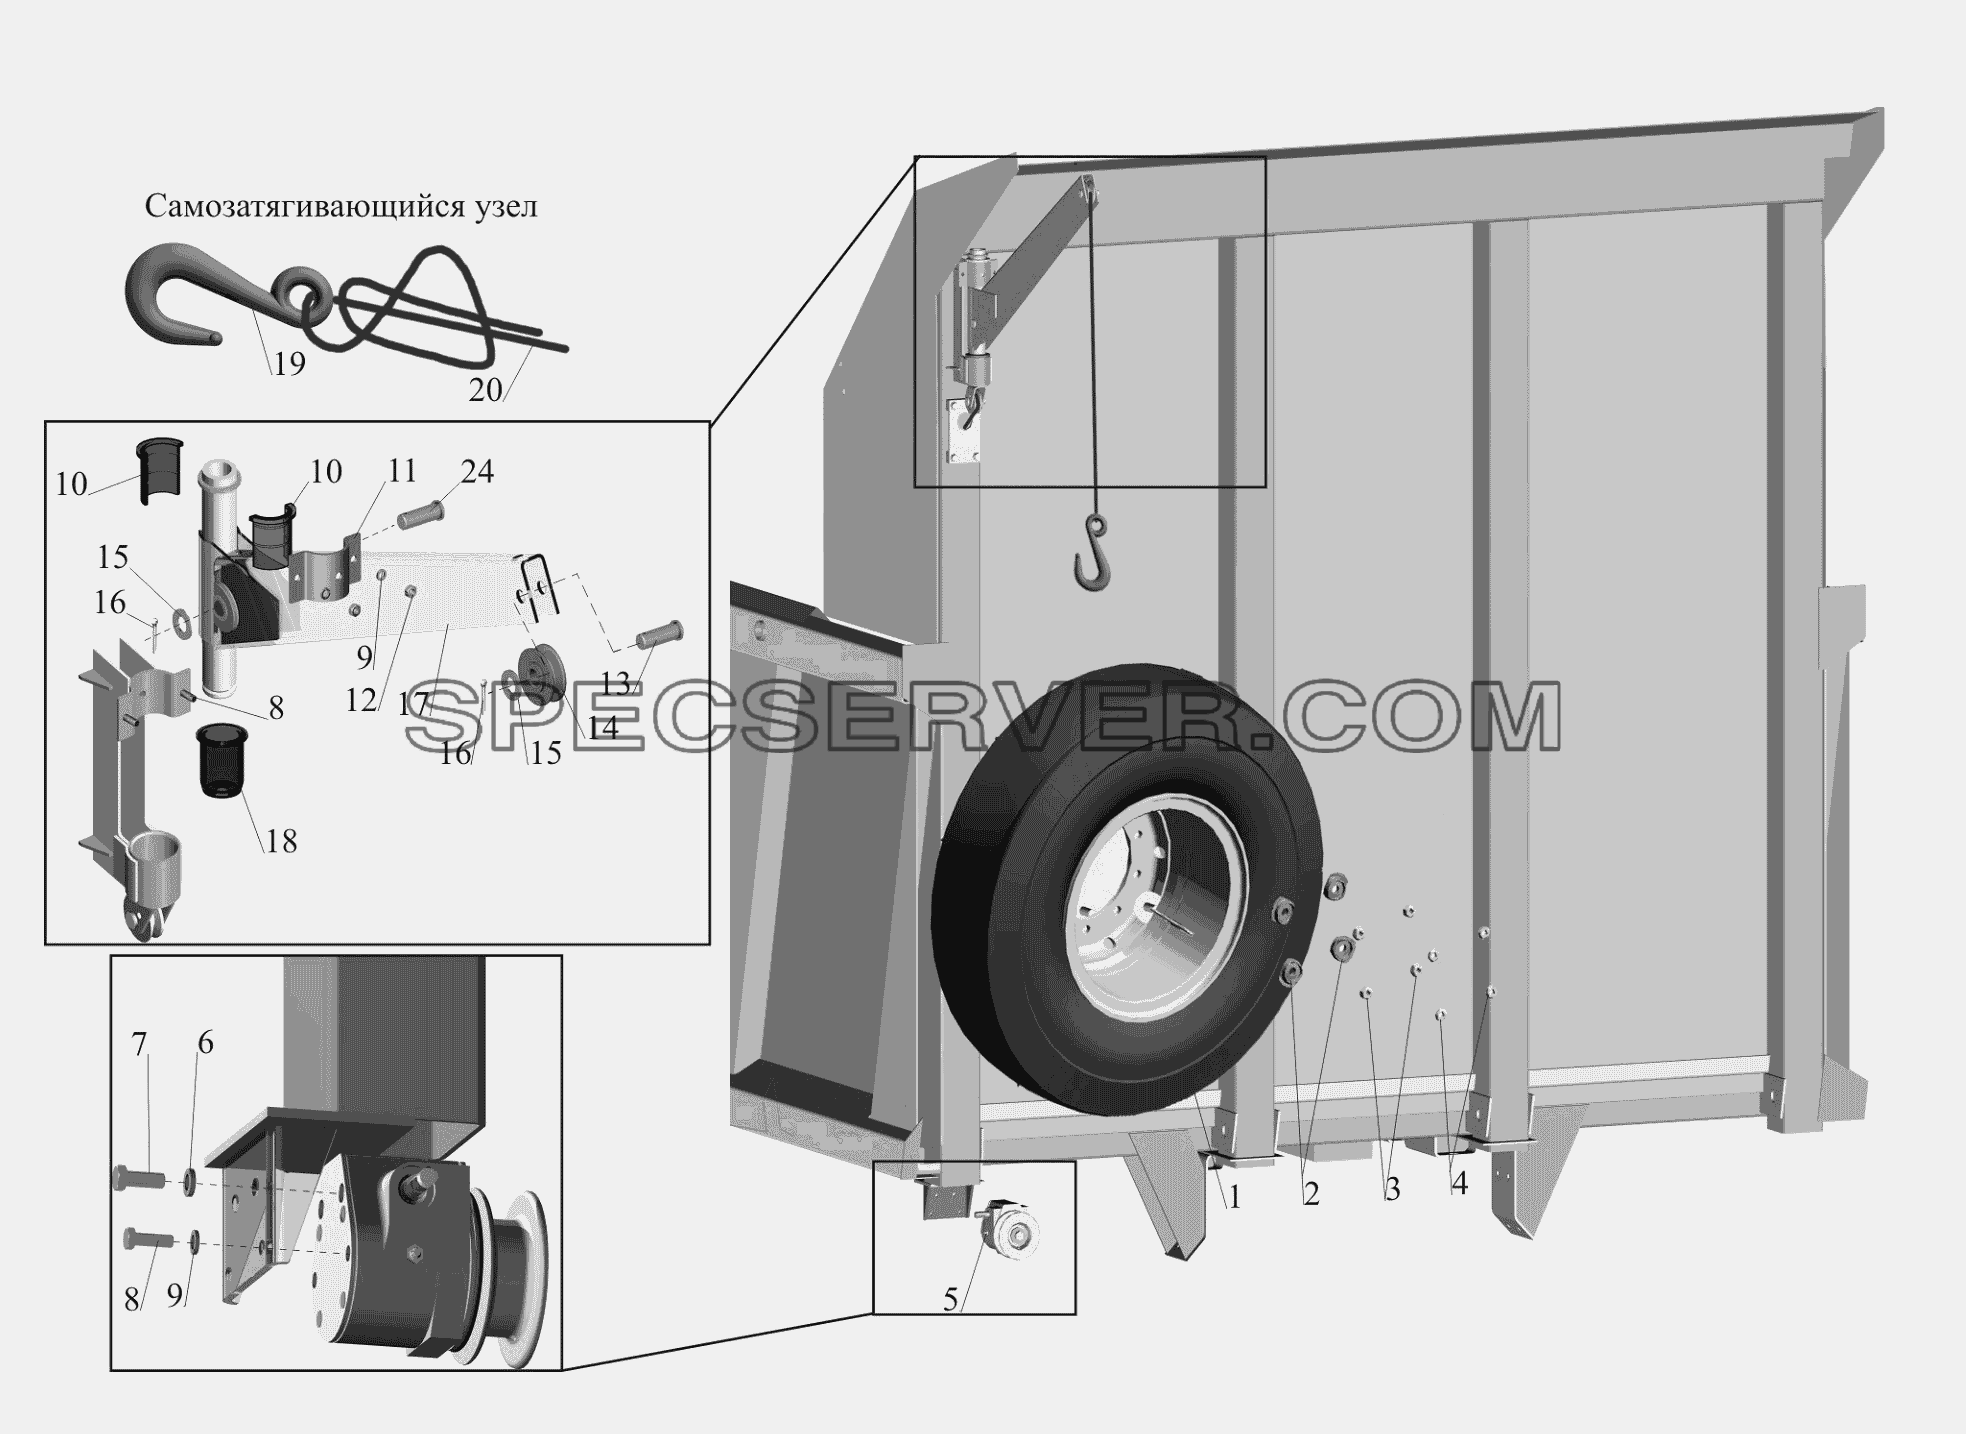 Установка запасного колеса для МАЗ-650119 (список запасных частей)